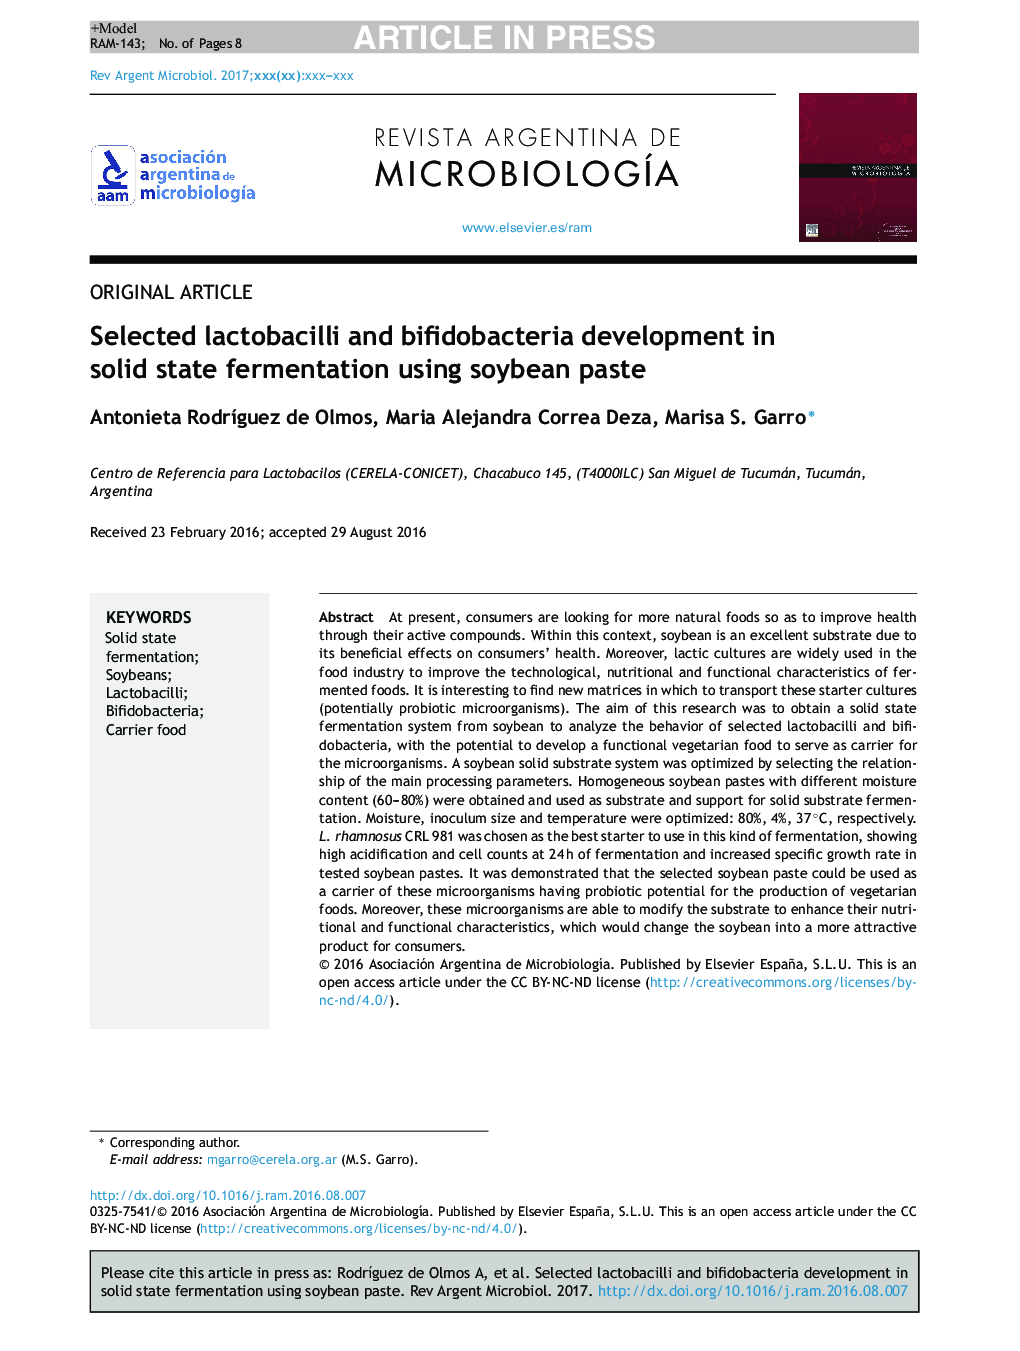 توسعه لاکتوباسیل و بیفیدوباکتریایی در تخمیر جامد با استفاده از خمیر سویا 